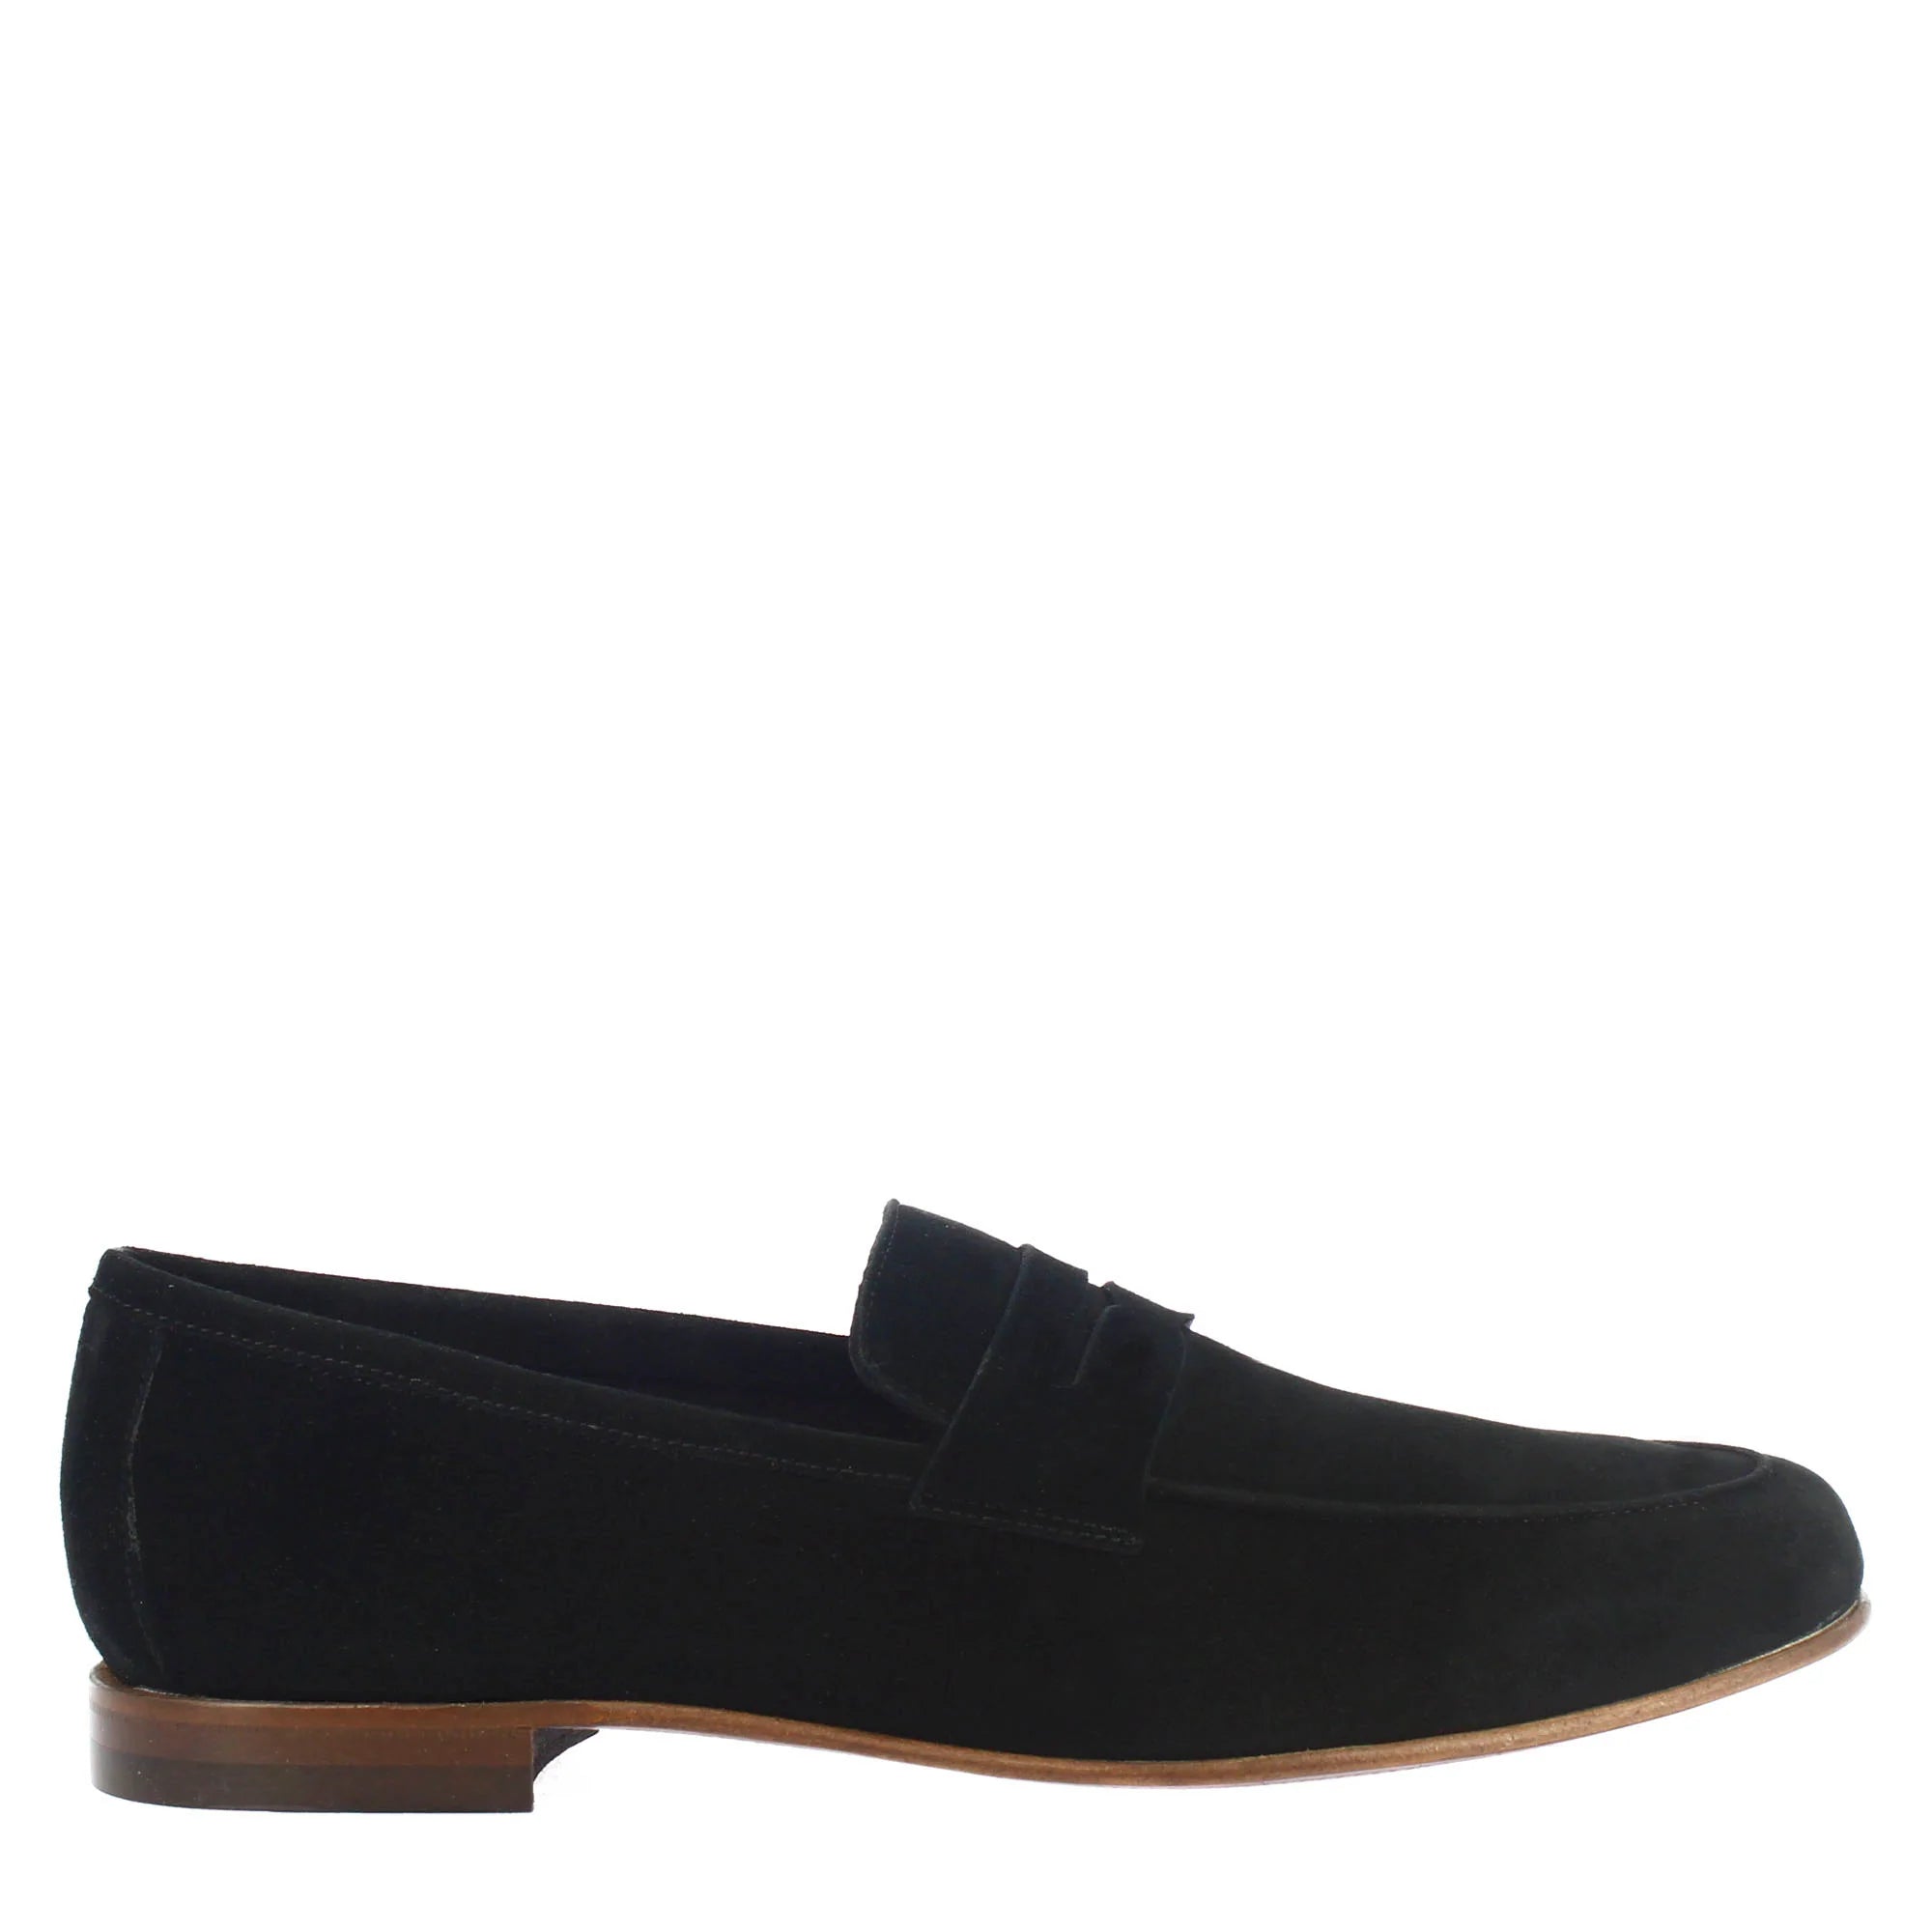 Black Suede Pocket Style Loafer